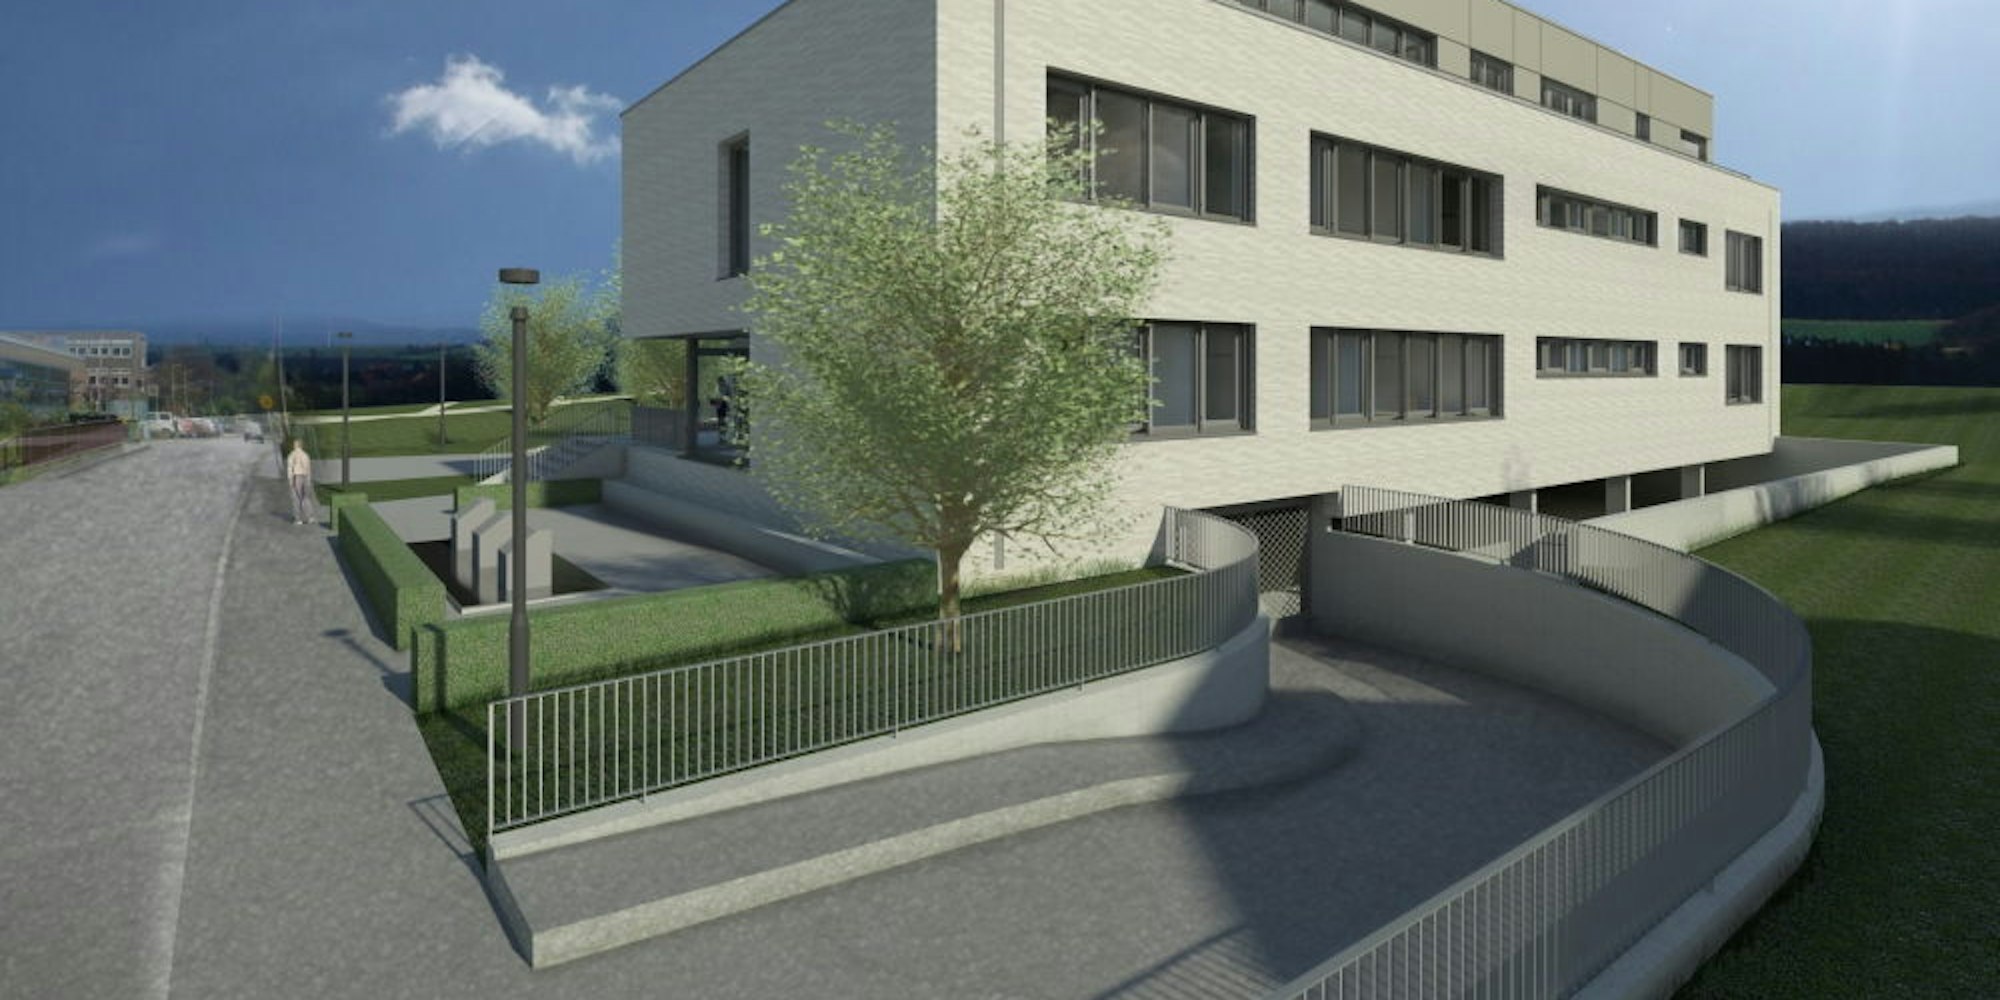 So stellen sich die Planer das neue Jugendhilfezentrum des Rhein-Sieg-Kreises mit Erziehungsberatungsstelle vor, das in Eitorf gebaut wird.